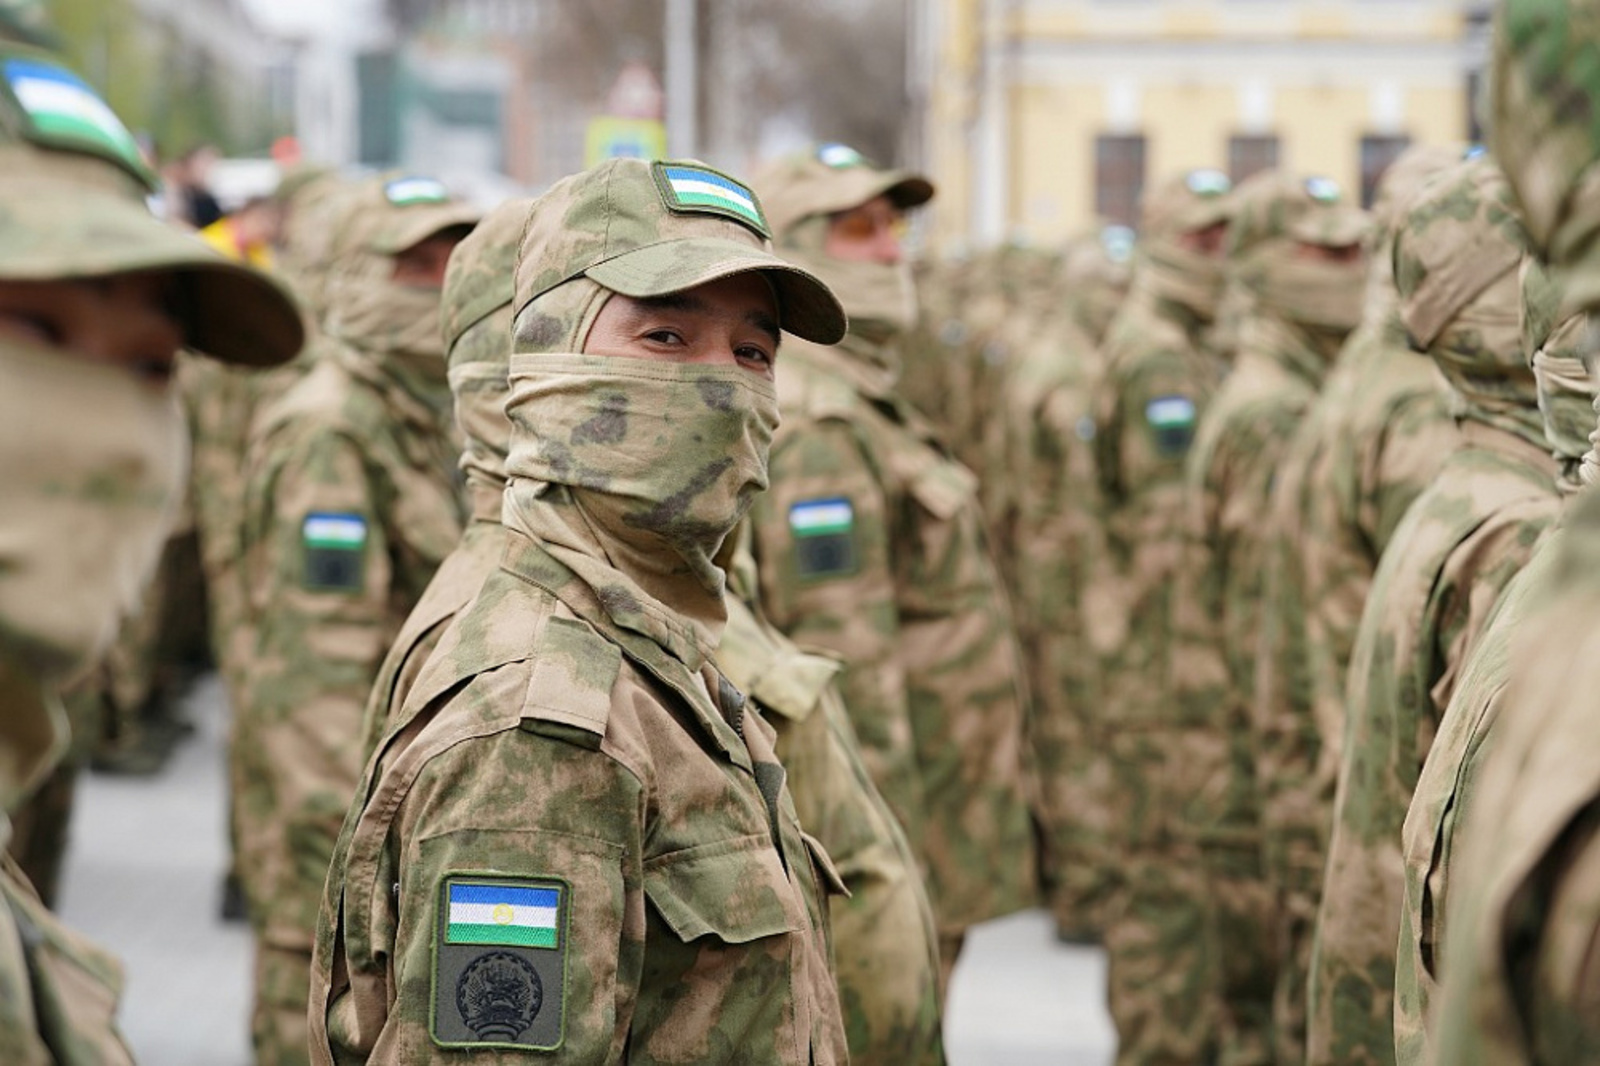 Башкирский батальон имени Даяна Мурзина отправился из Уфы к месту боевого слаживания